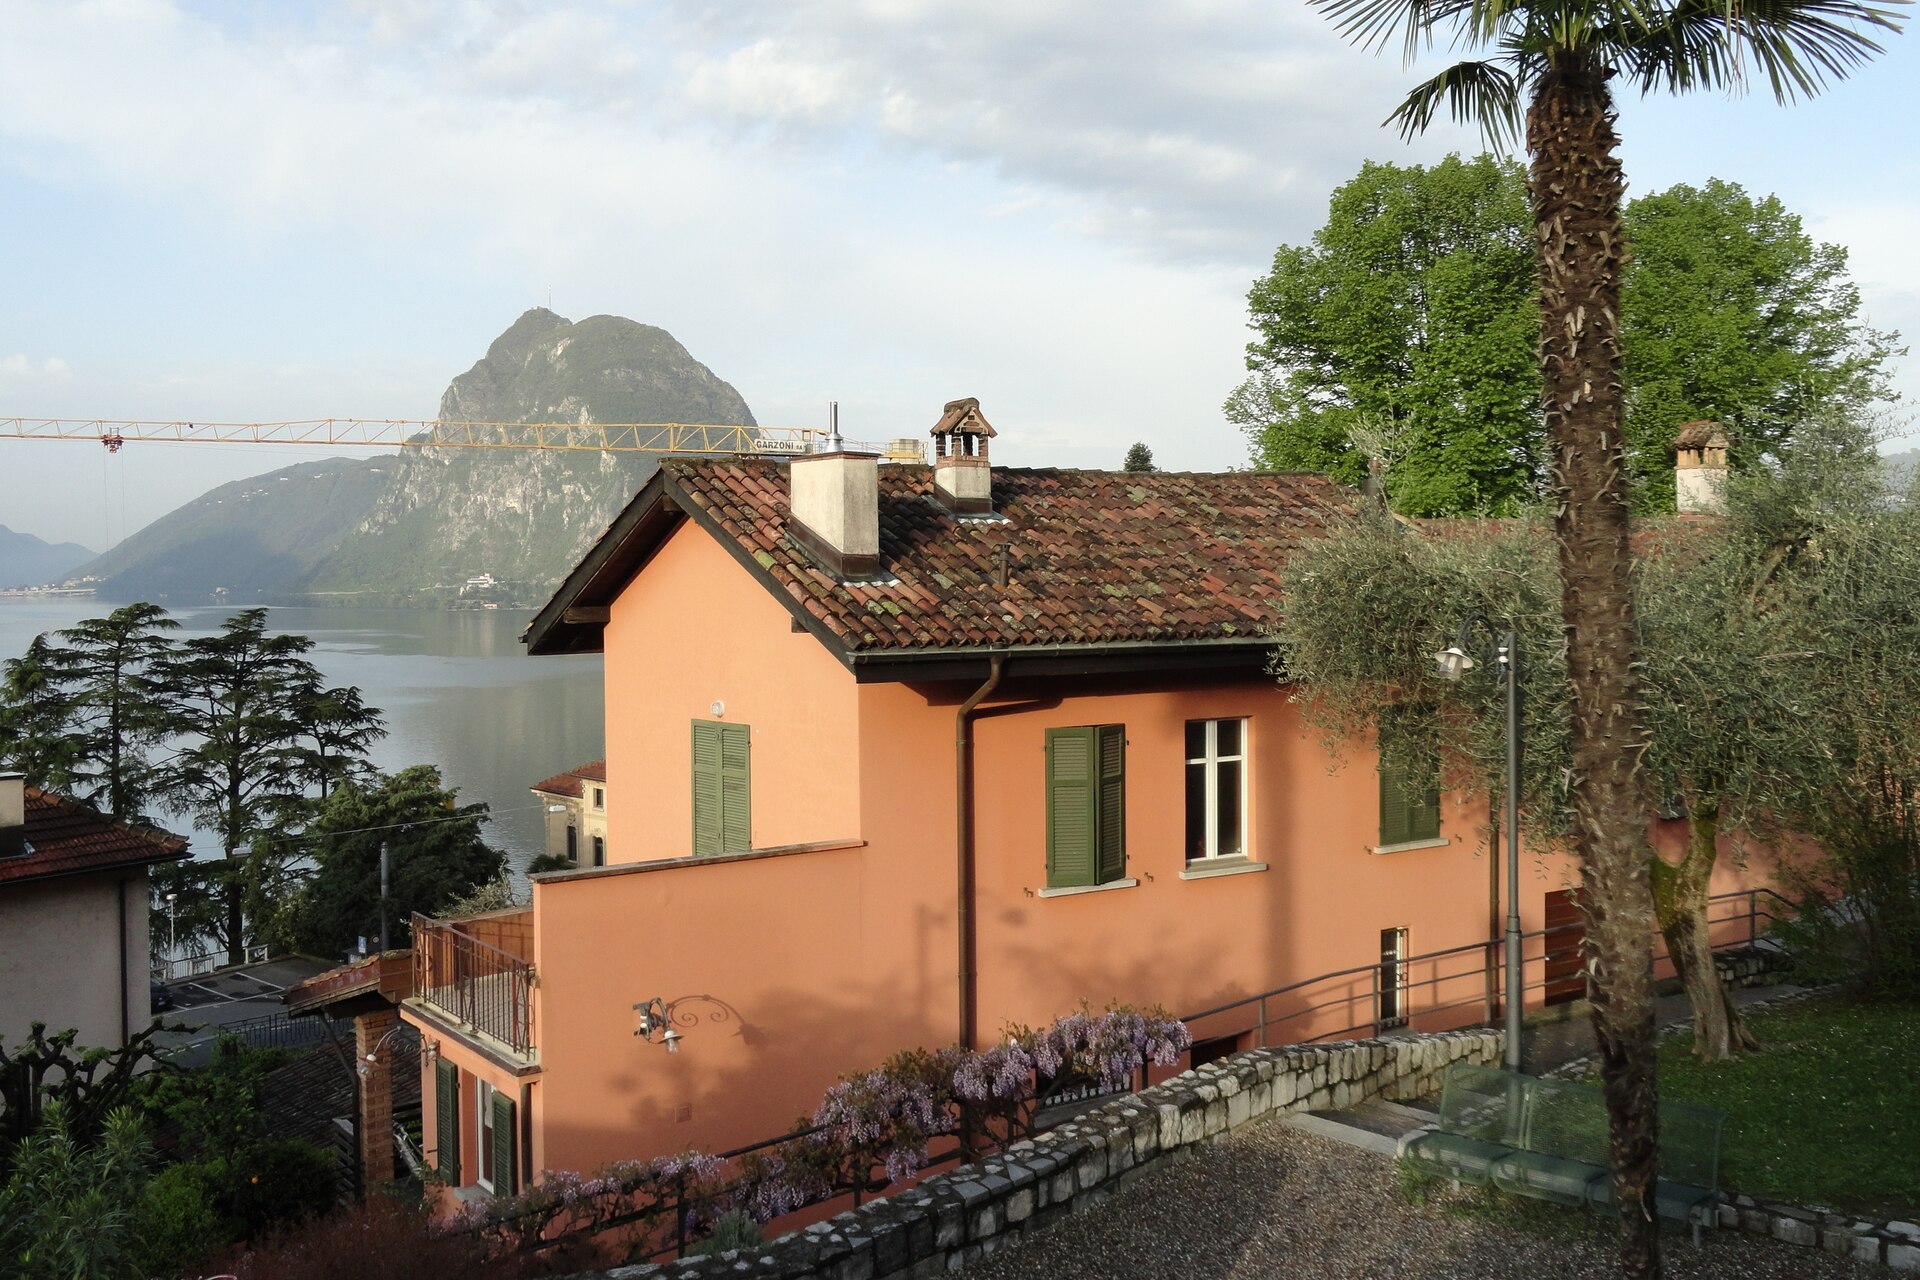 Ciencias humanas y naturales: Casa Carla Cattaneo en Castagnola, en el territorio del Municipio de Lugano, en el Cantón Ticino: albergará la Fundación IBSA para la Investigación Científica, que se fija nuevas y ambiciosas metas